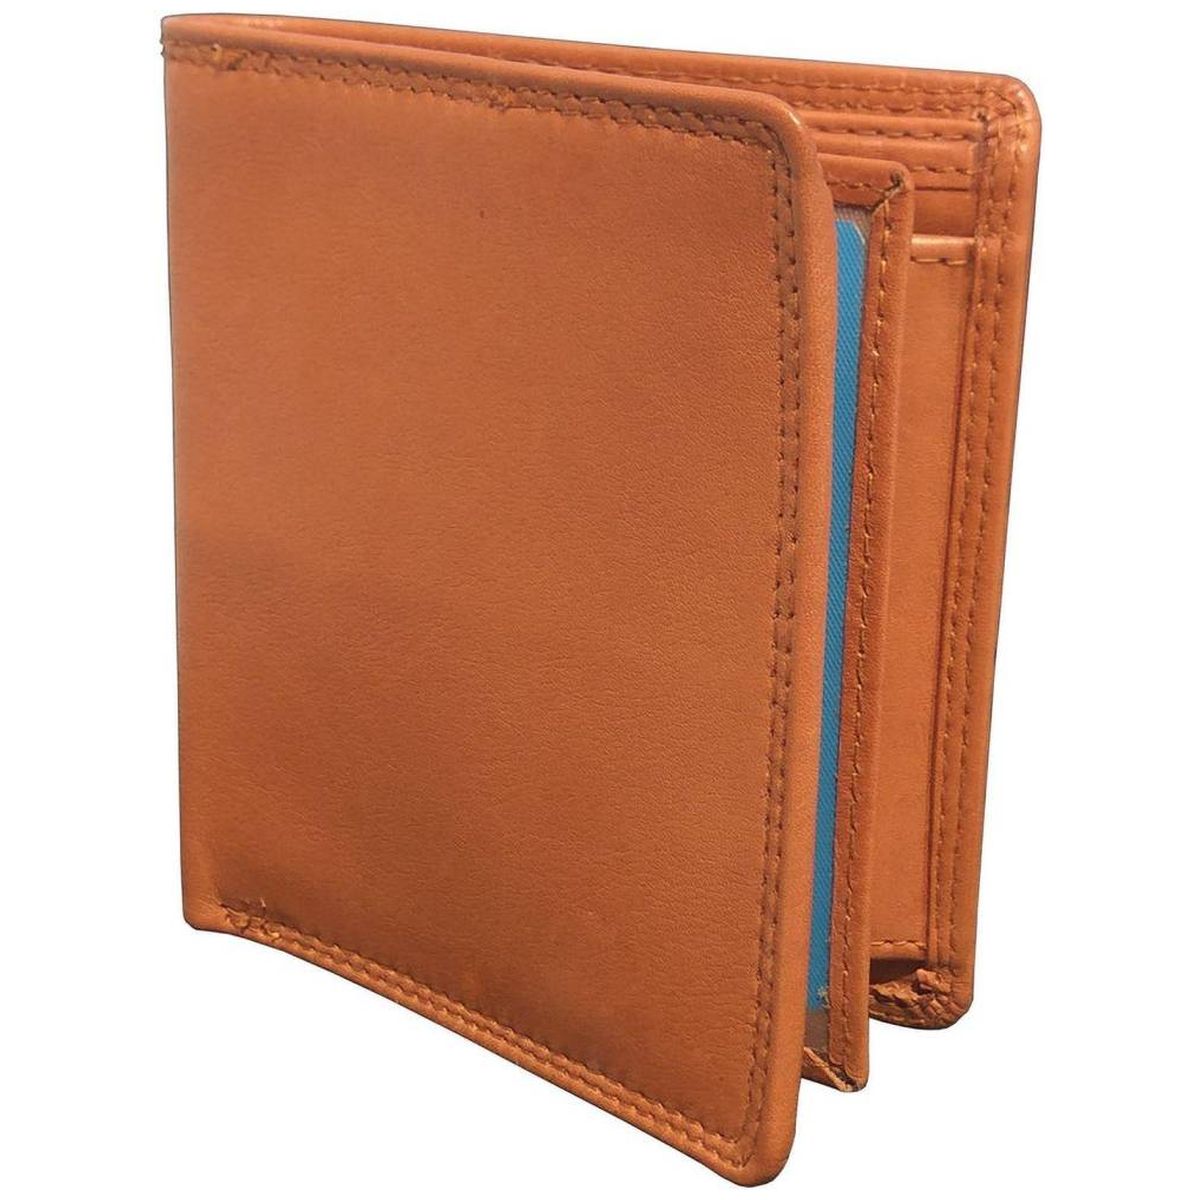 Debonair International Men Genuine Leather 7 Slots Wallet, DI934490, Brown